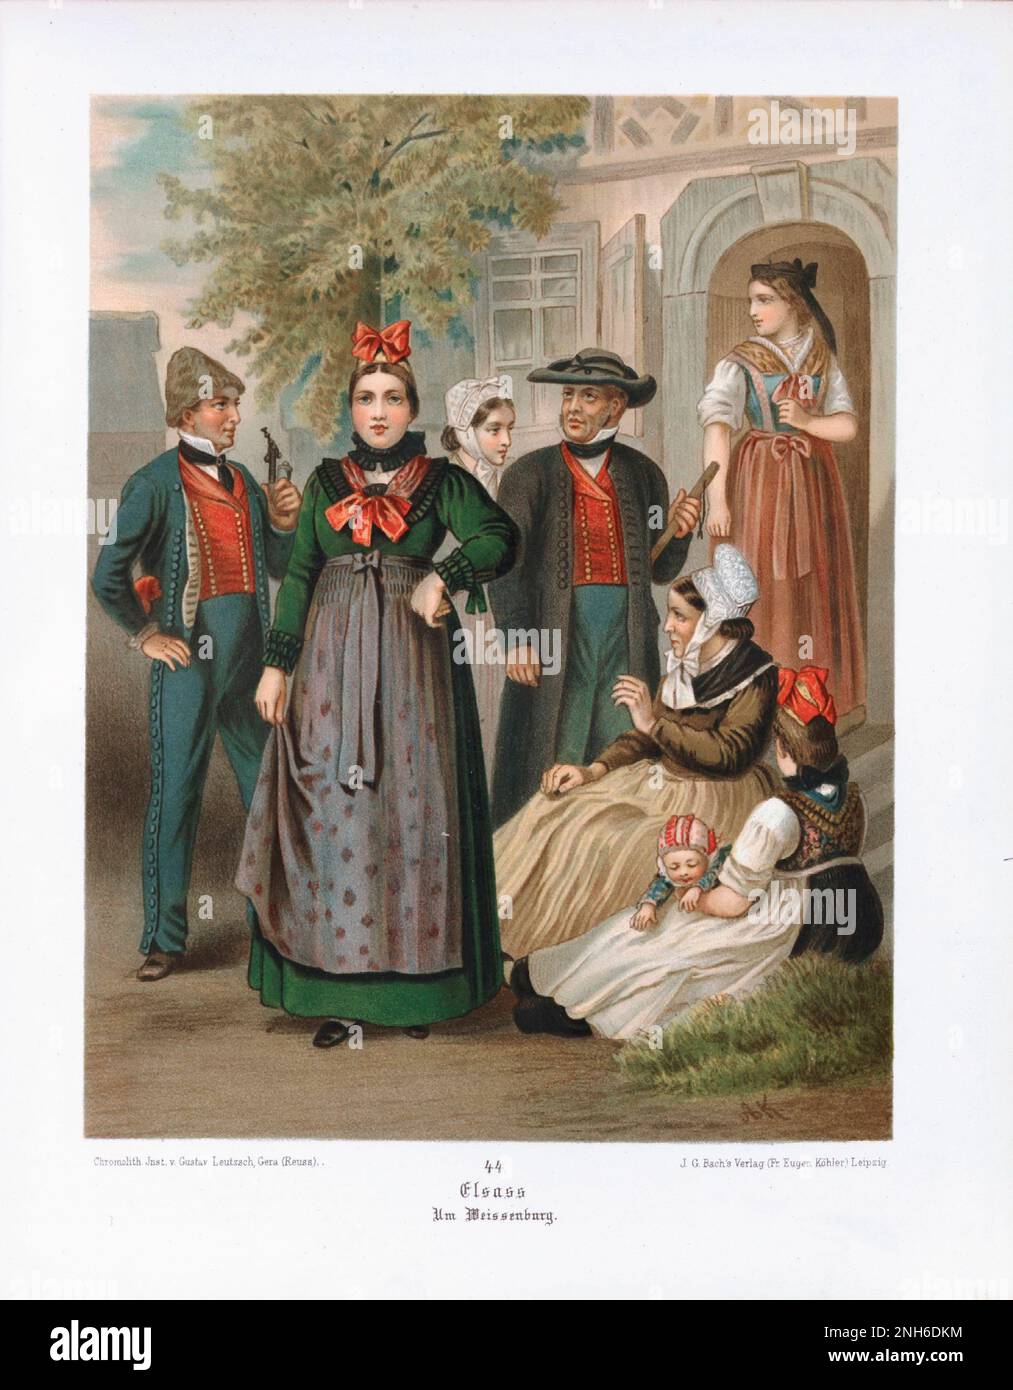 Disfraz folclórico alemán. Alsacia (alemán: Elsass). litografía del siglo 19th. Foto de stock